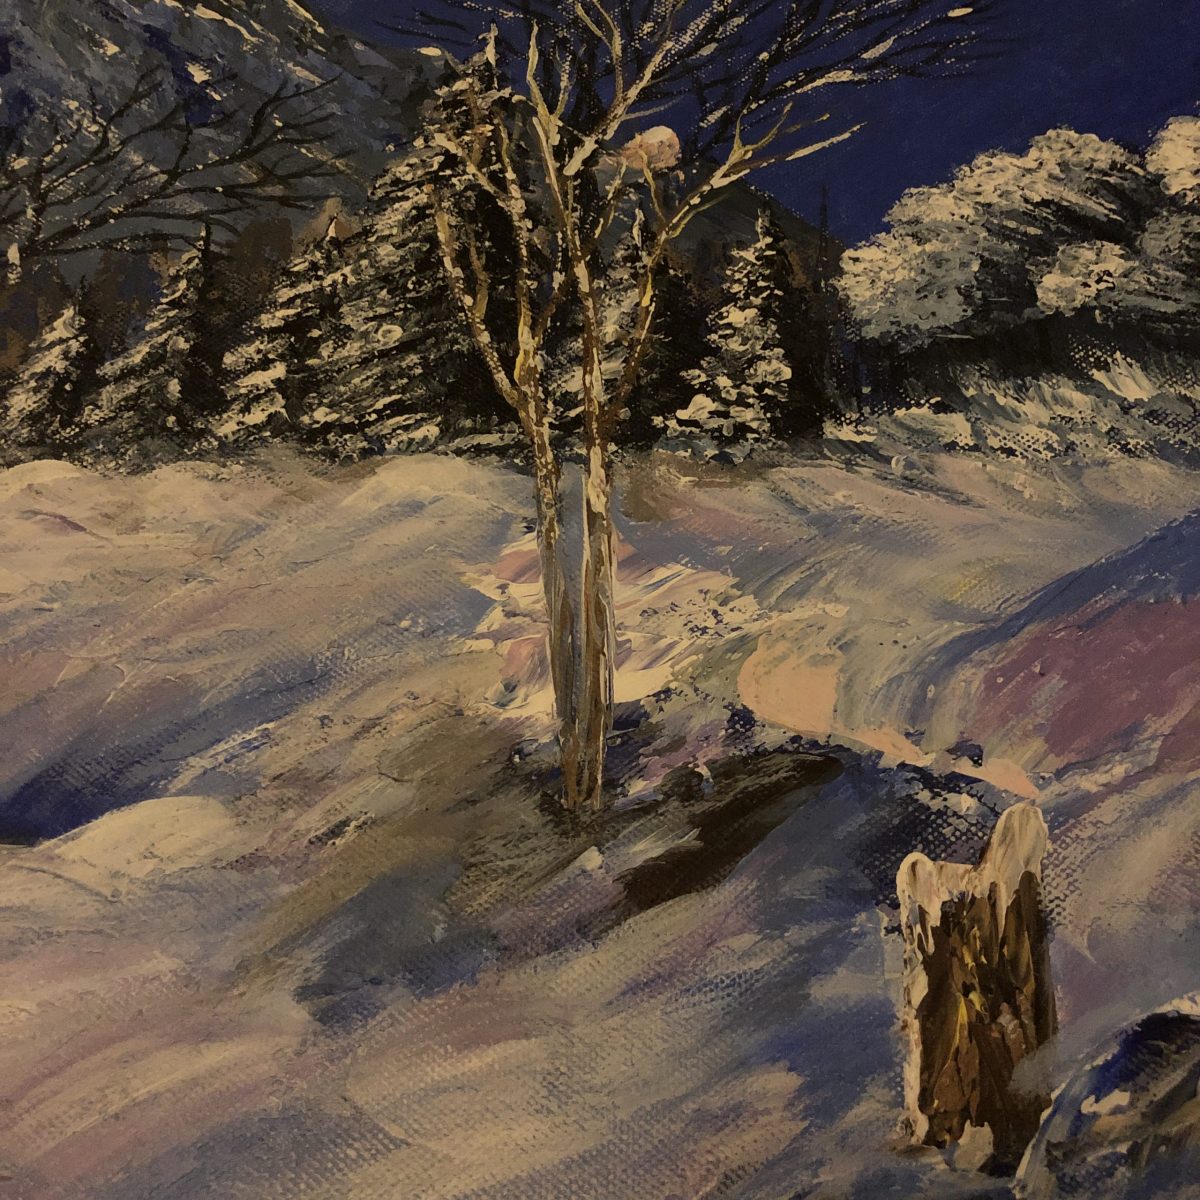 a snowy ewening plan sur l'arbre enneigé